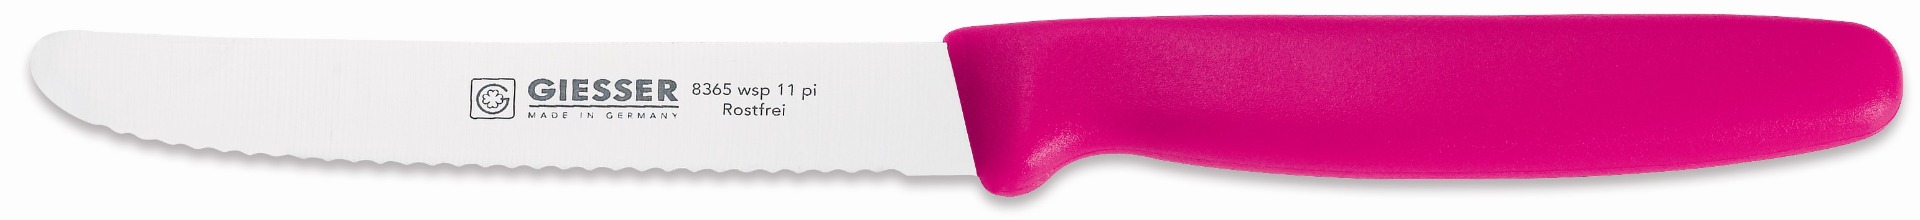 Giesser Allzweckmesser Wellenschliff - 11 cm - Pink